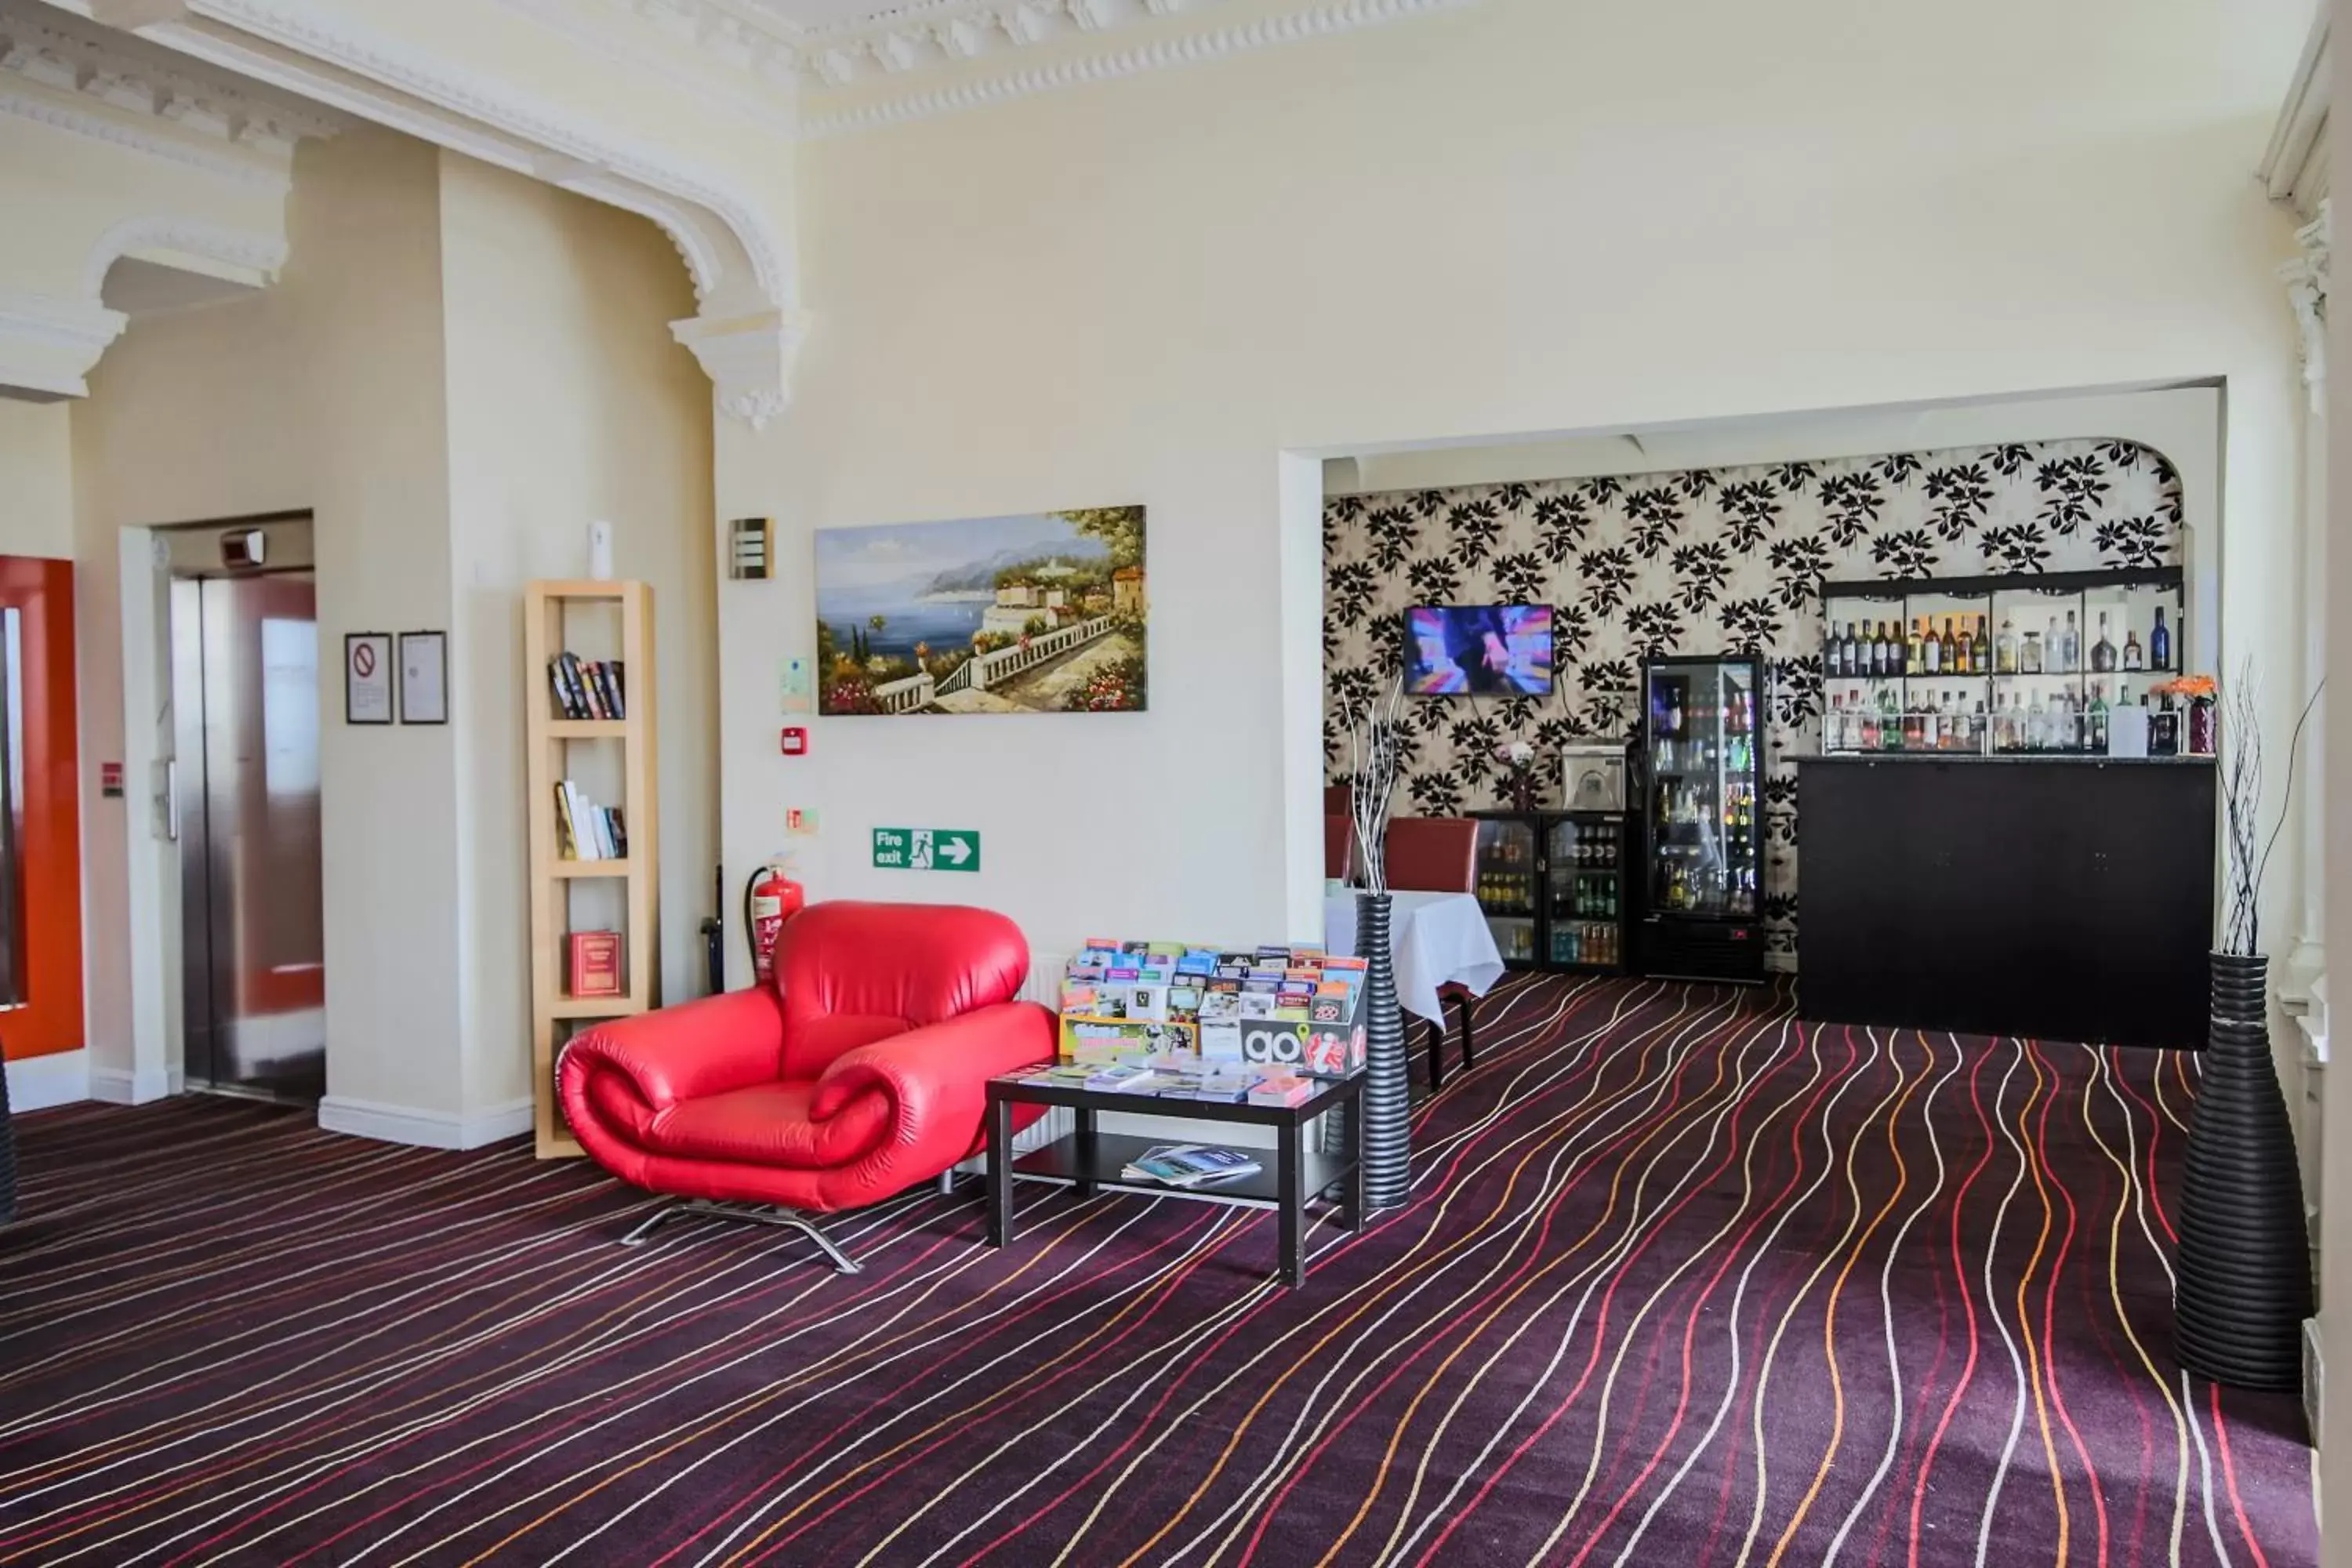 Lounge or bar, Lobby/Reception in Iris Hotel Llandudno